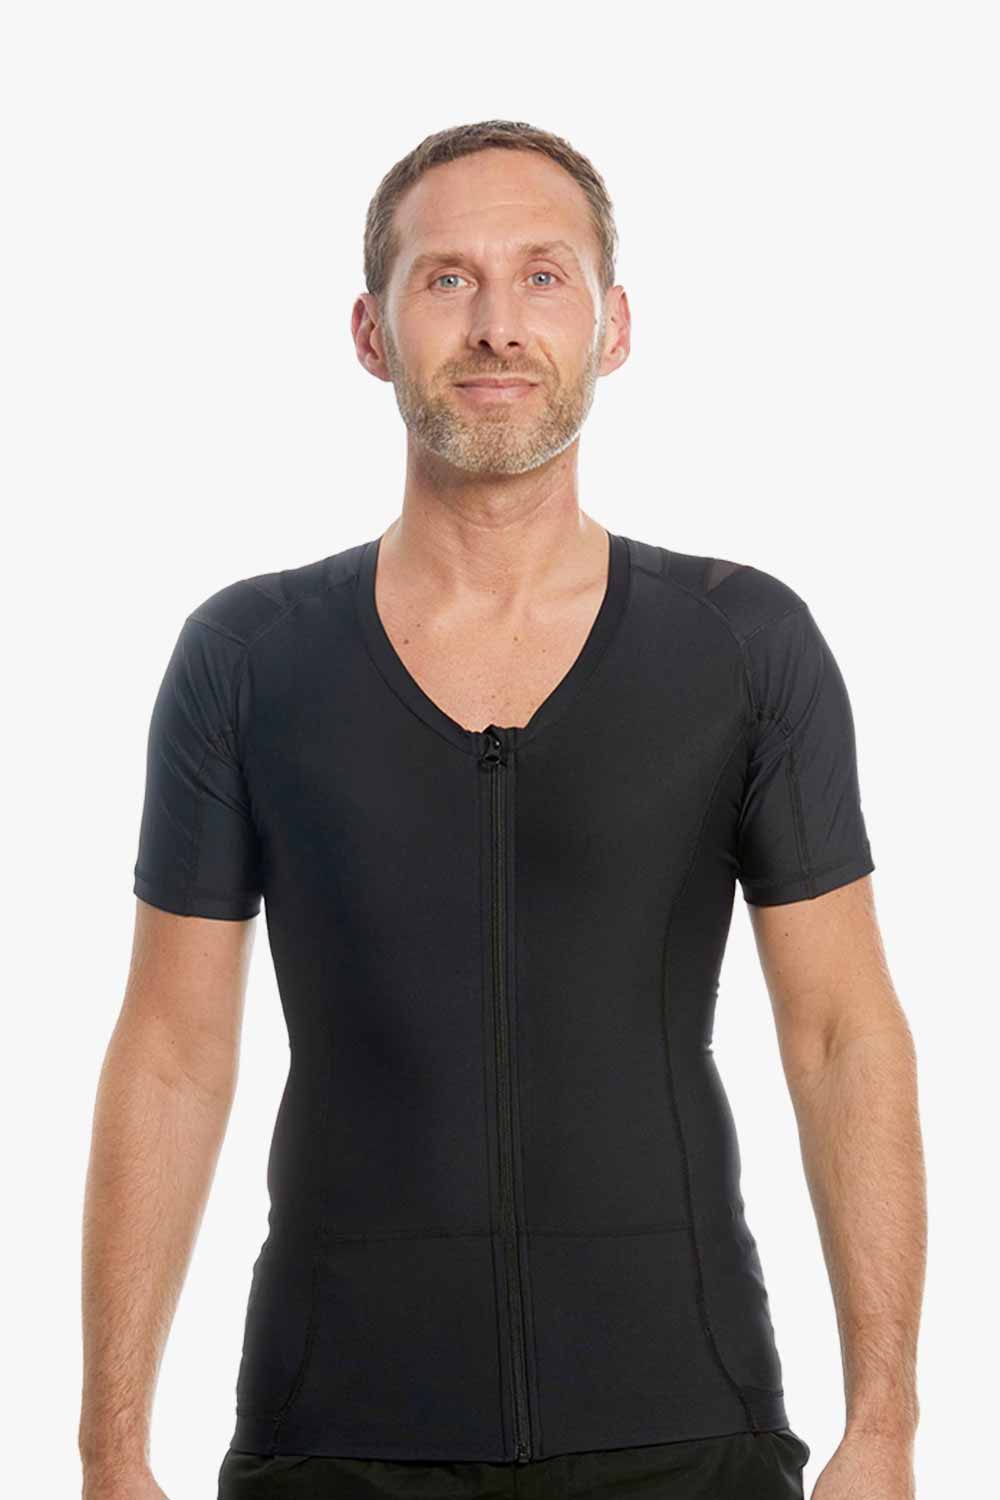 Men's Posture Shirt™ Zipper - Svart